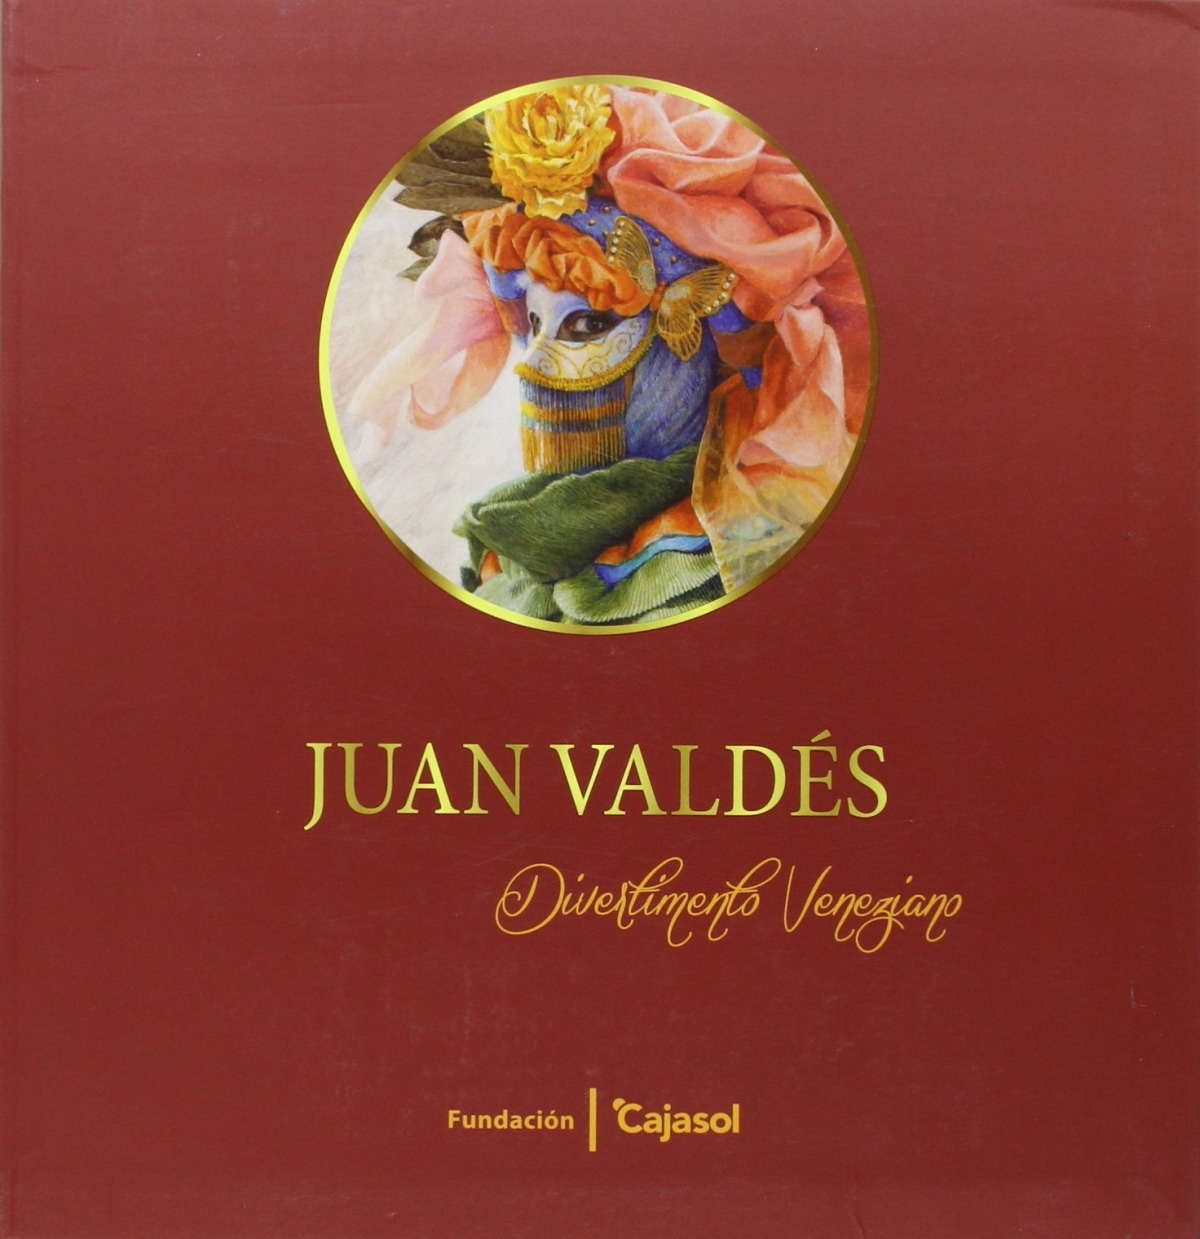 Juan Valdés, Divertimento veneziano - Pareja López, Enrique F.